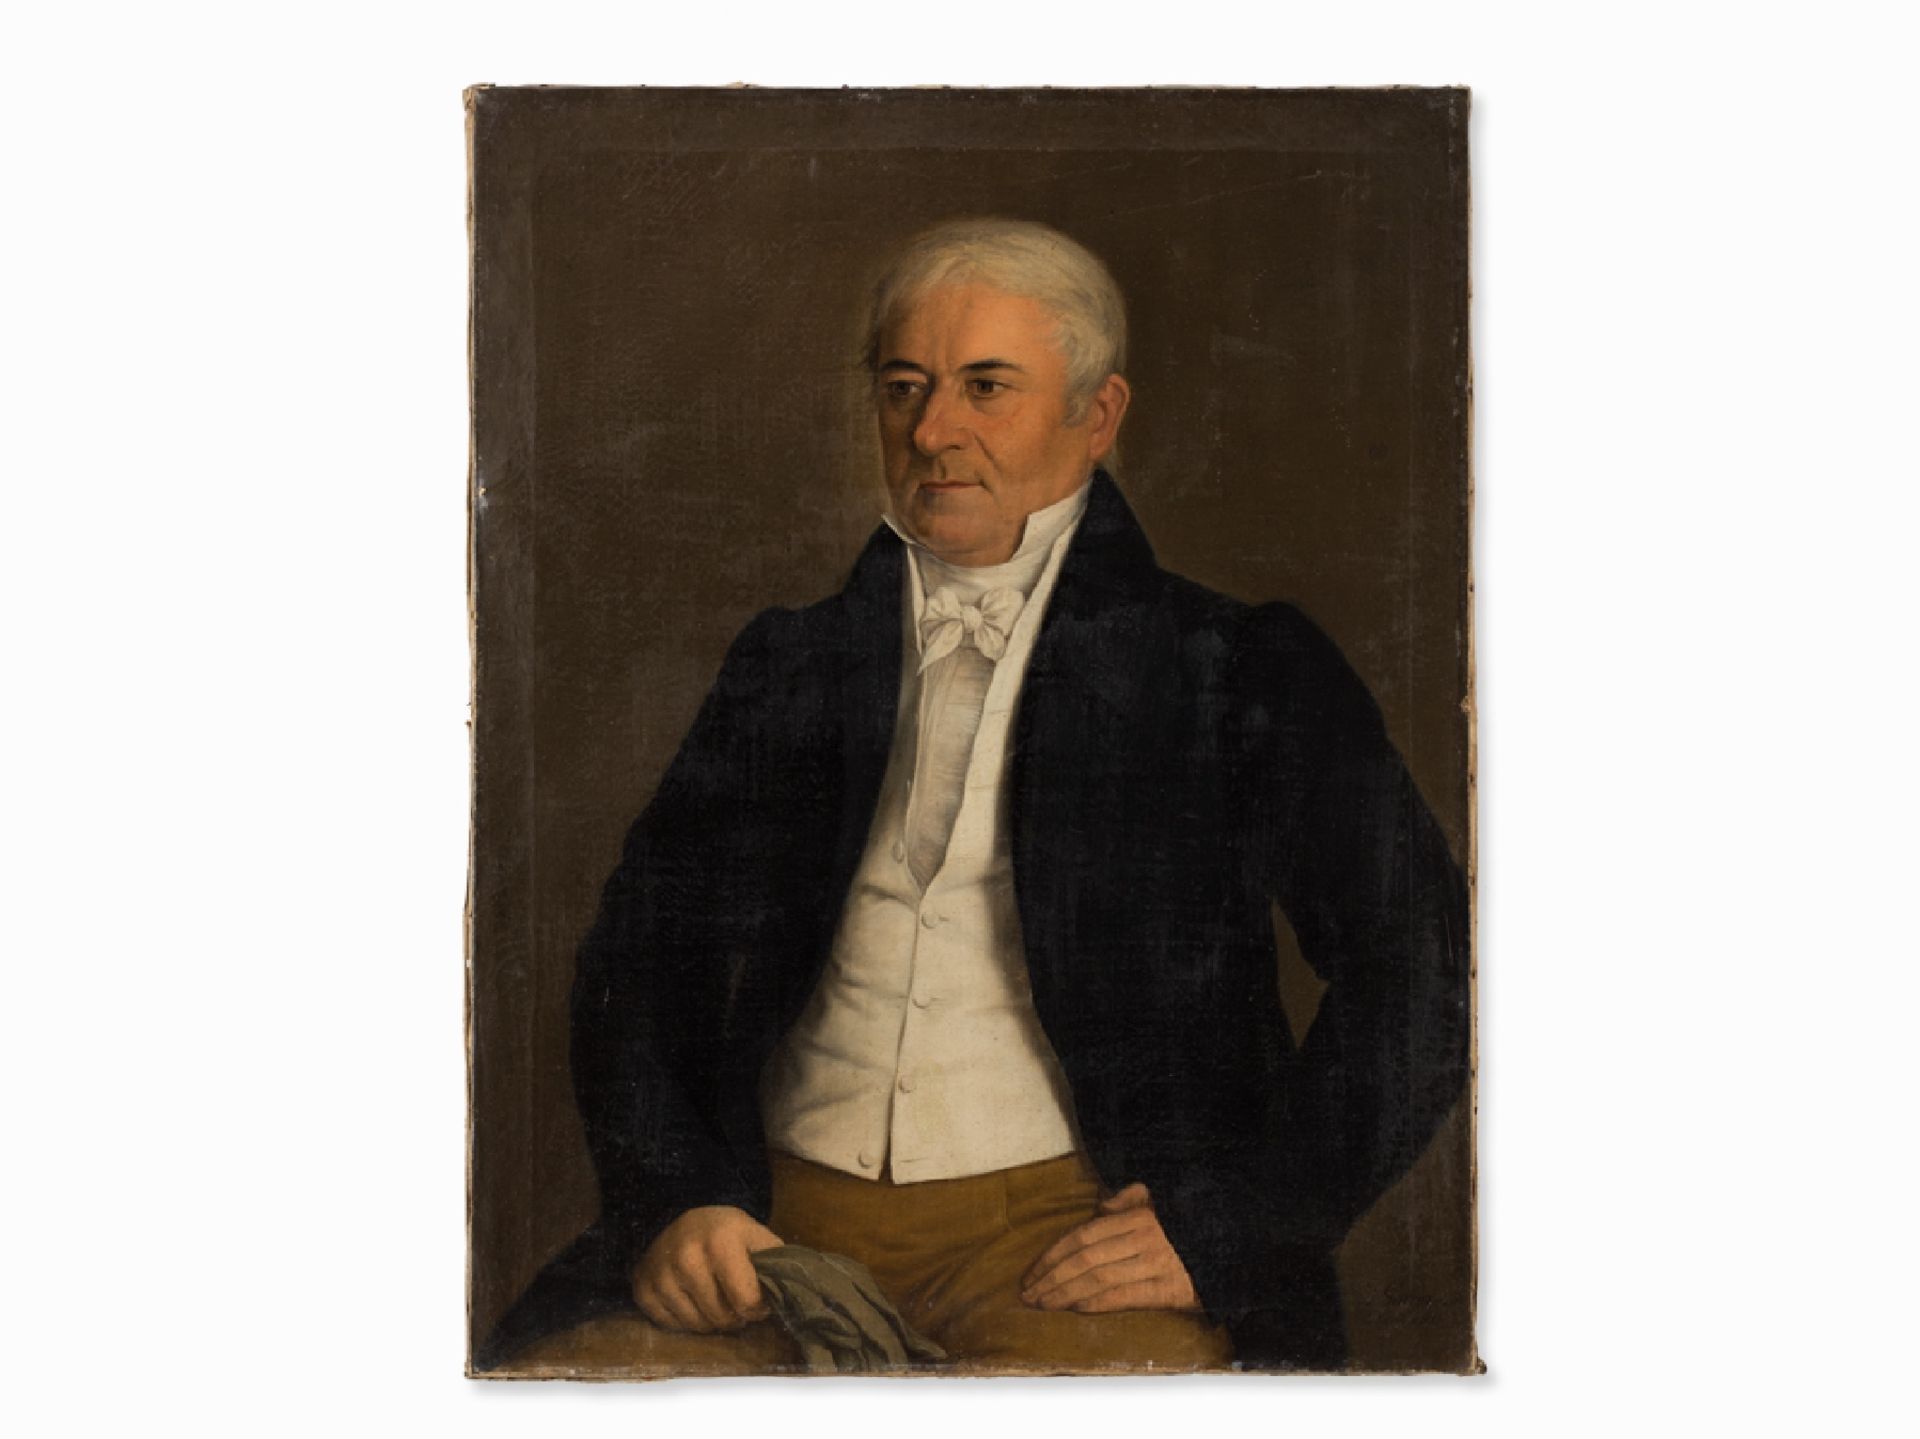 Jose Garcia Chicano (1775-1858), Portrait eines Herrn, 1829 | Jose Garcia Chicano (1775-1858), A Gen - Bild 2 aus 8